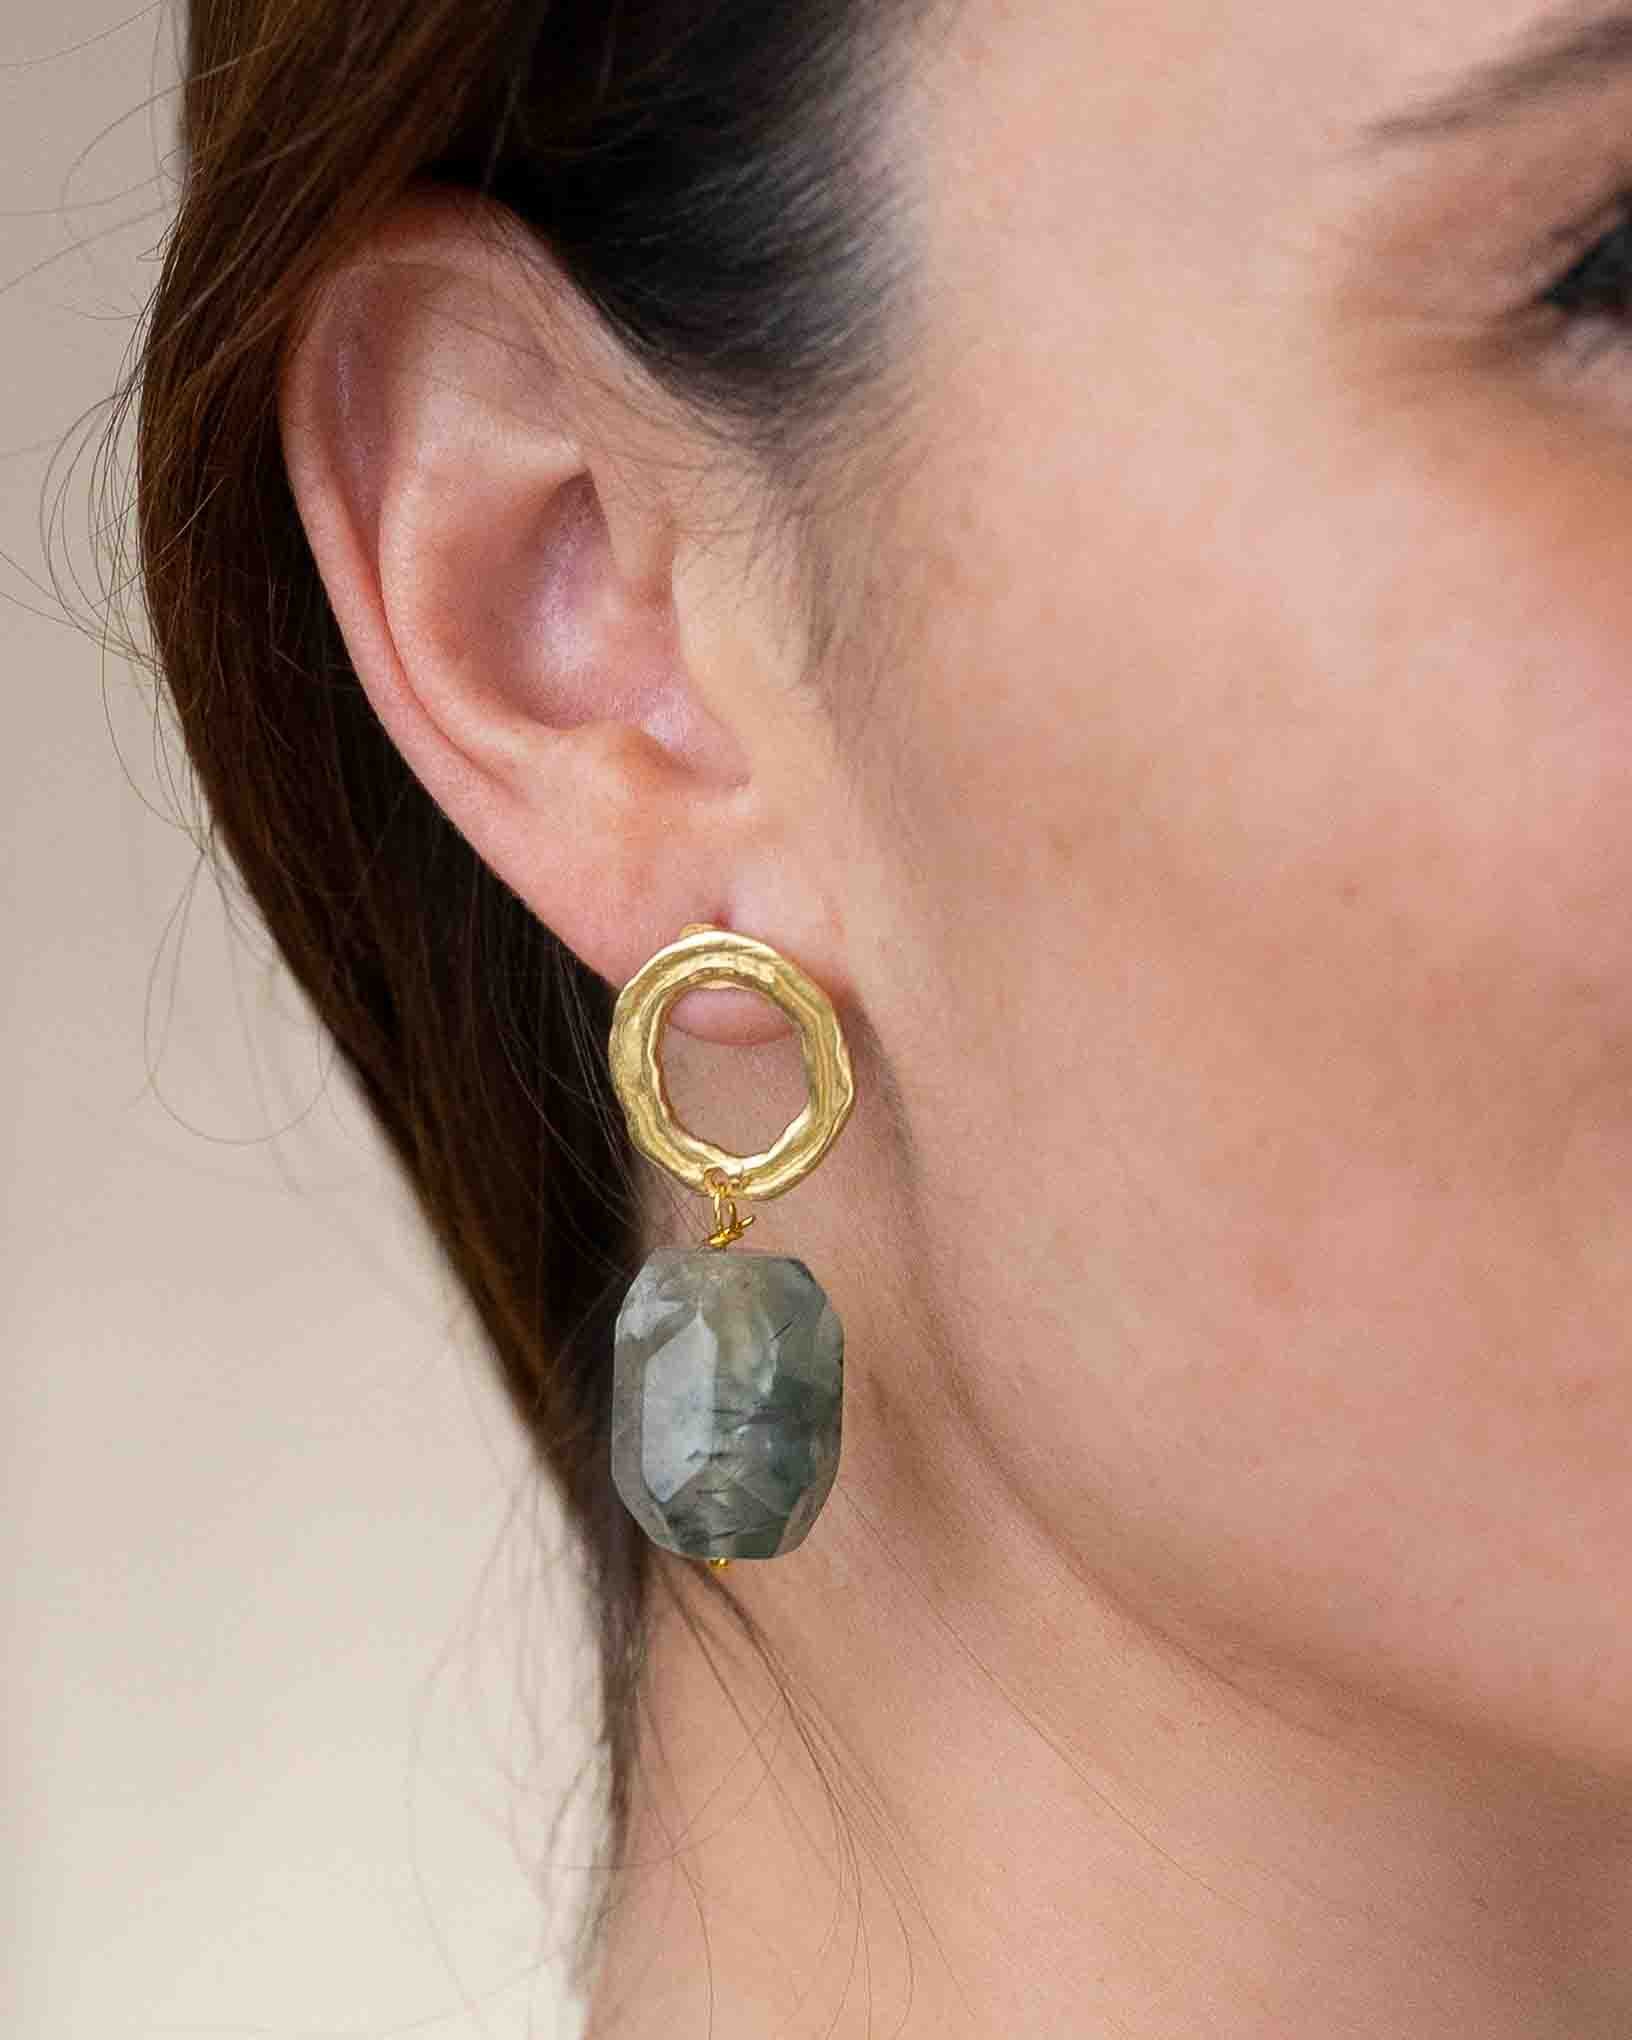 Ohrring Oliva aus der Kollektion Quattro Stagione von Donna Rachele Jewelry